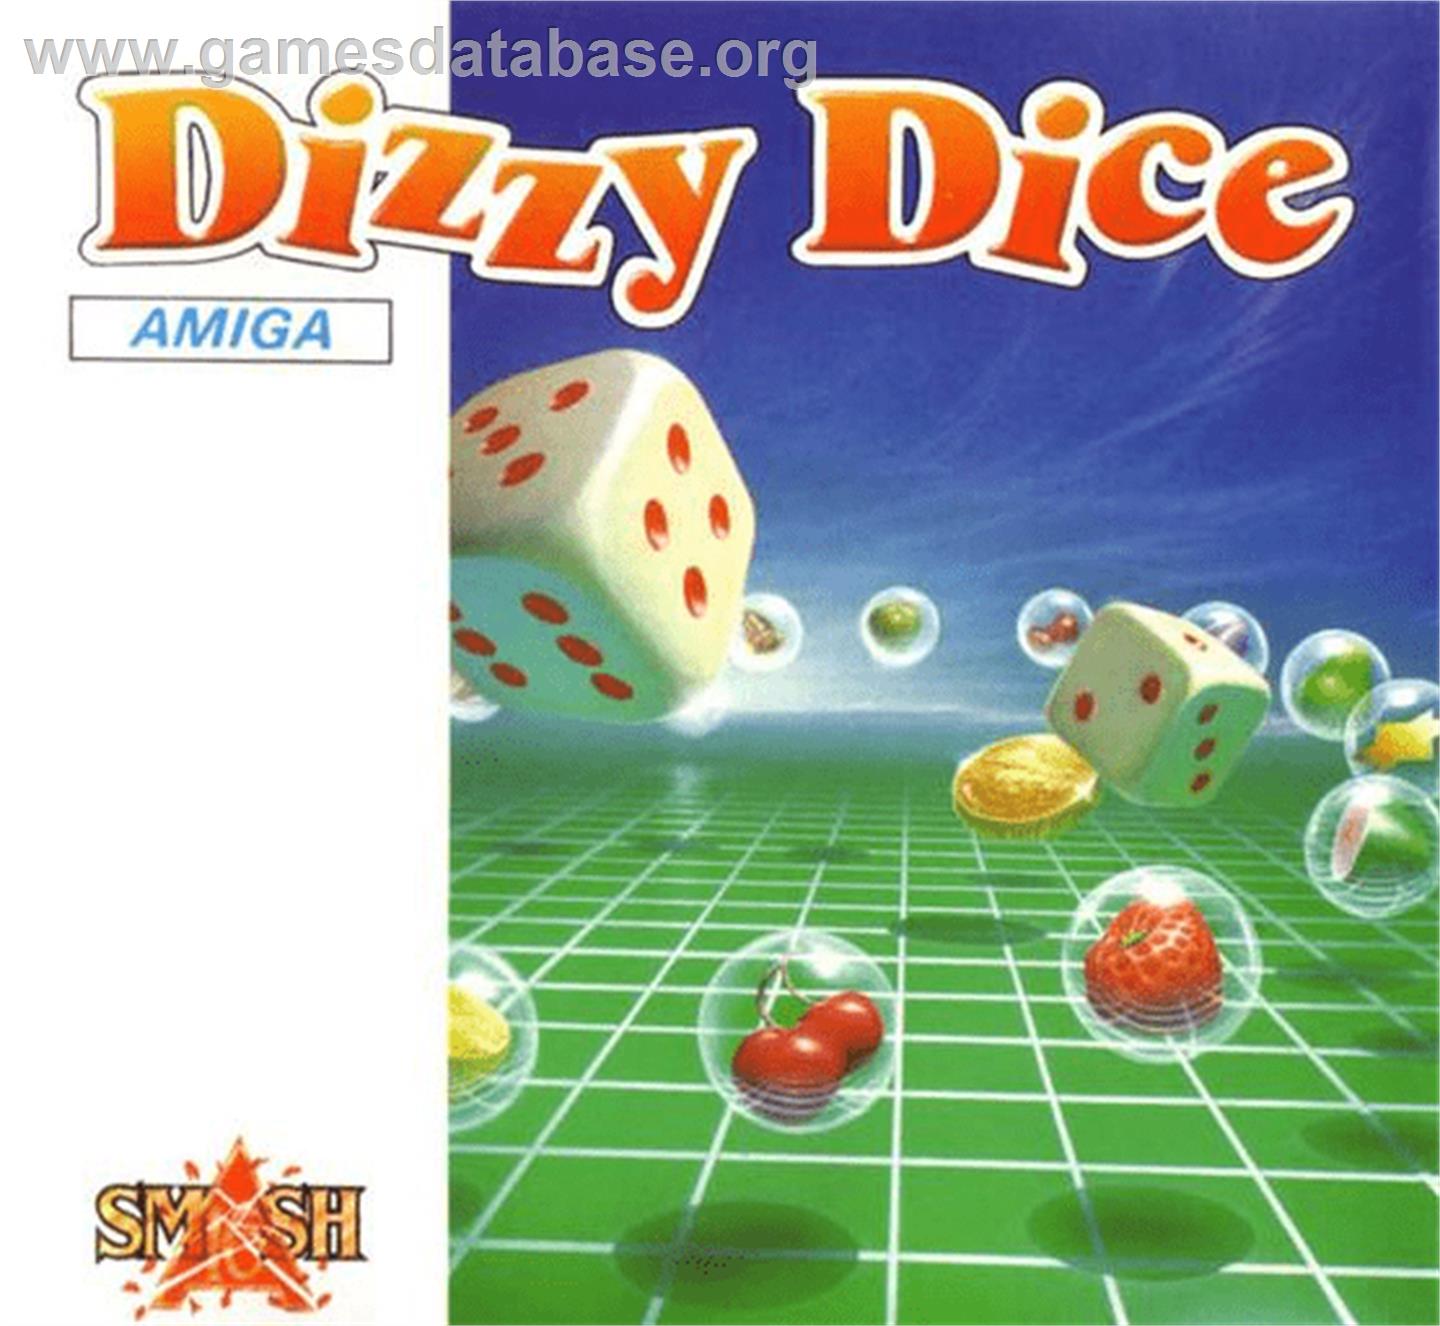 Dizzy Dice - Commodore Amiga - Artwork - Box